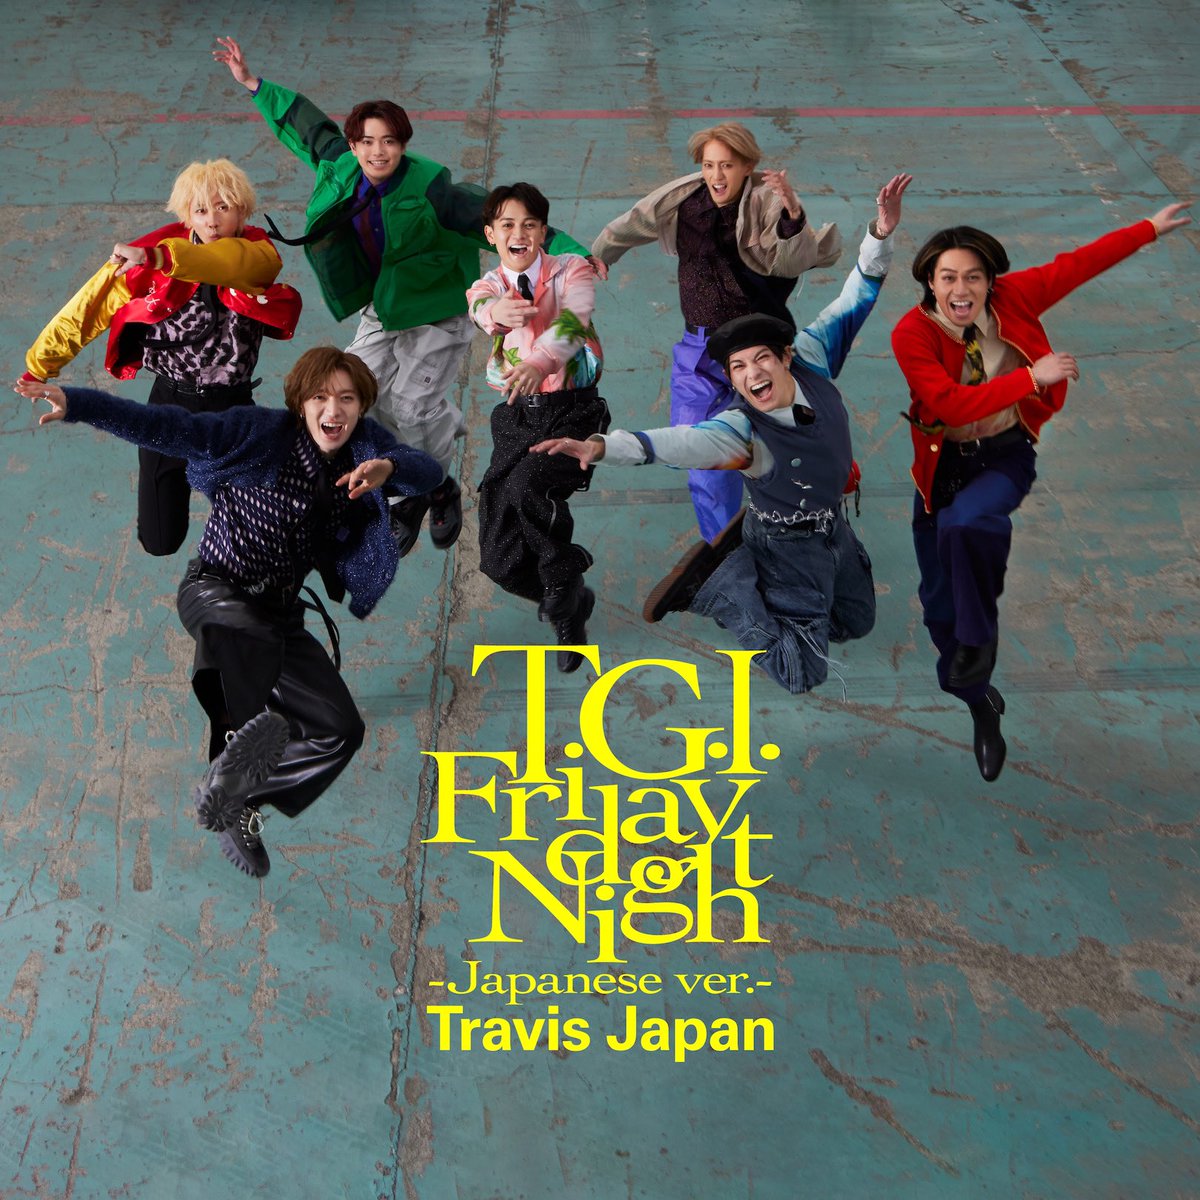 ⋱🌈 配信スタート 🌈⋰ 4th Single 「T.G.I. Friday Night 」 OUT NOW!!!!!!! 英語詞/日本語詞 2バージョン同時リリース!! 🔁 🎧Streaming/Download TravisJapan.lnk.to/TGIFN 🎧Streaming/Download(Japanese ver.) TravisJapan.lnk.to/TGIFJ #TravisJapan #TGIFridayNight